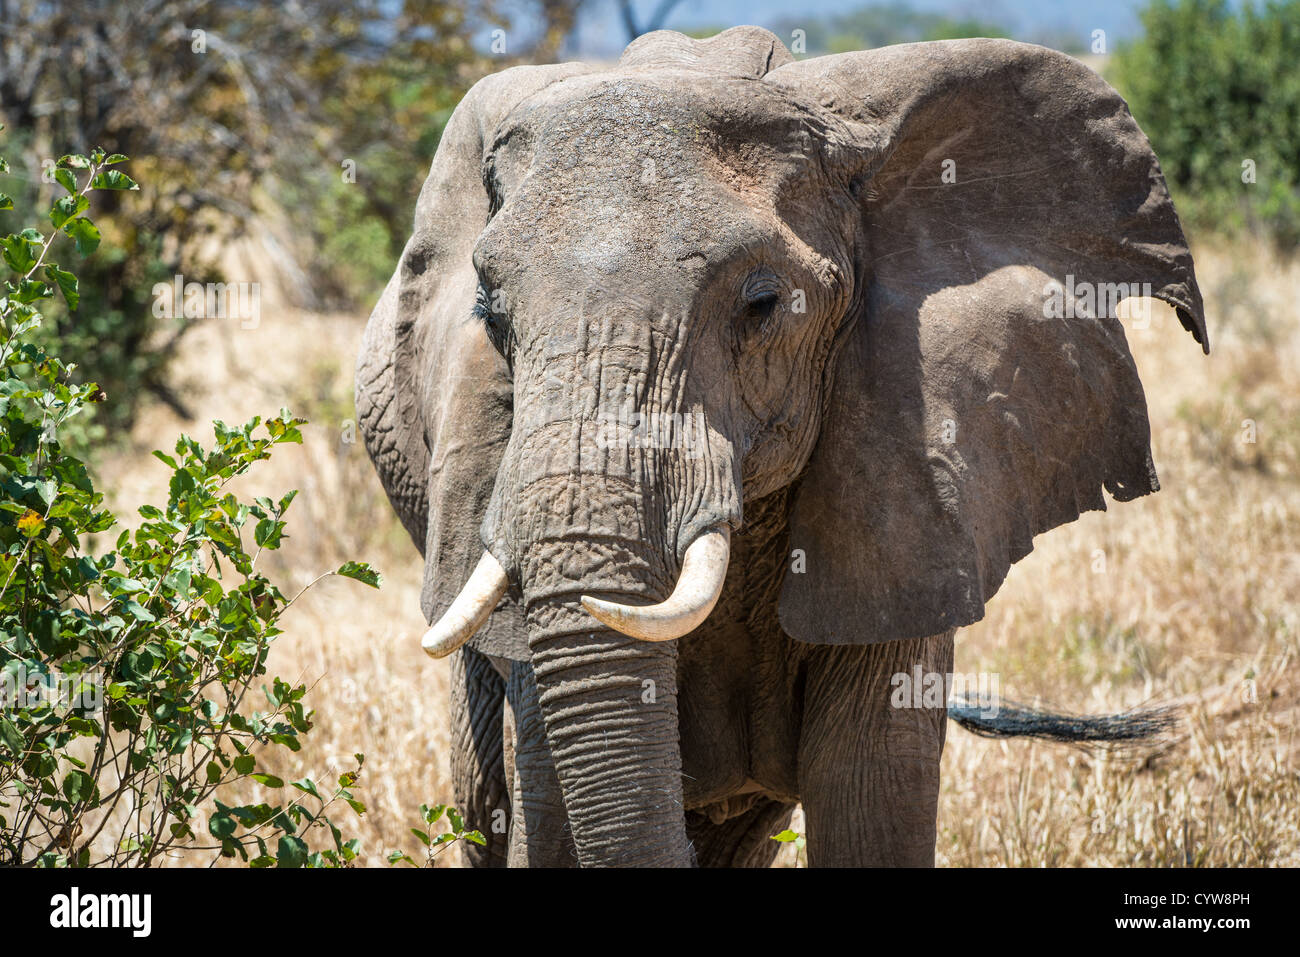 Der Tarangire National Park, Tansania - Ein erwachsener Elefant in der Tarangire National Park im Norden von Tansania, nicht weit von den Ngorongoro Krater und die Serengeti. Stockfoto